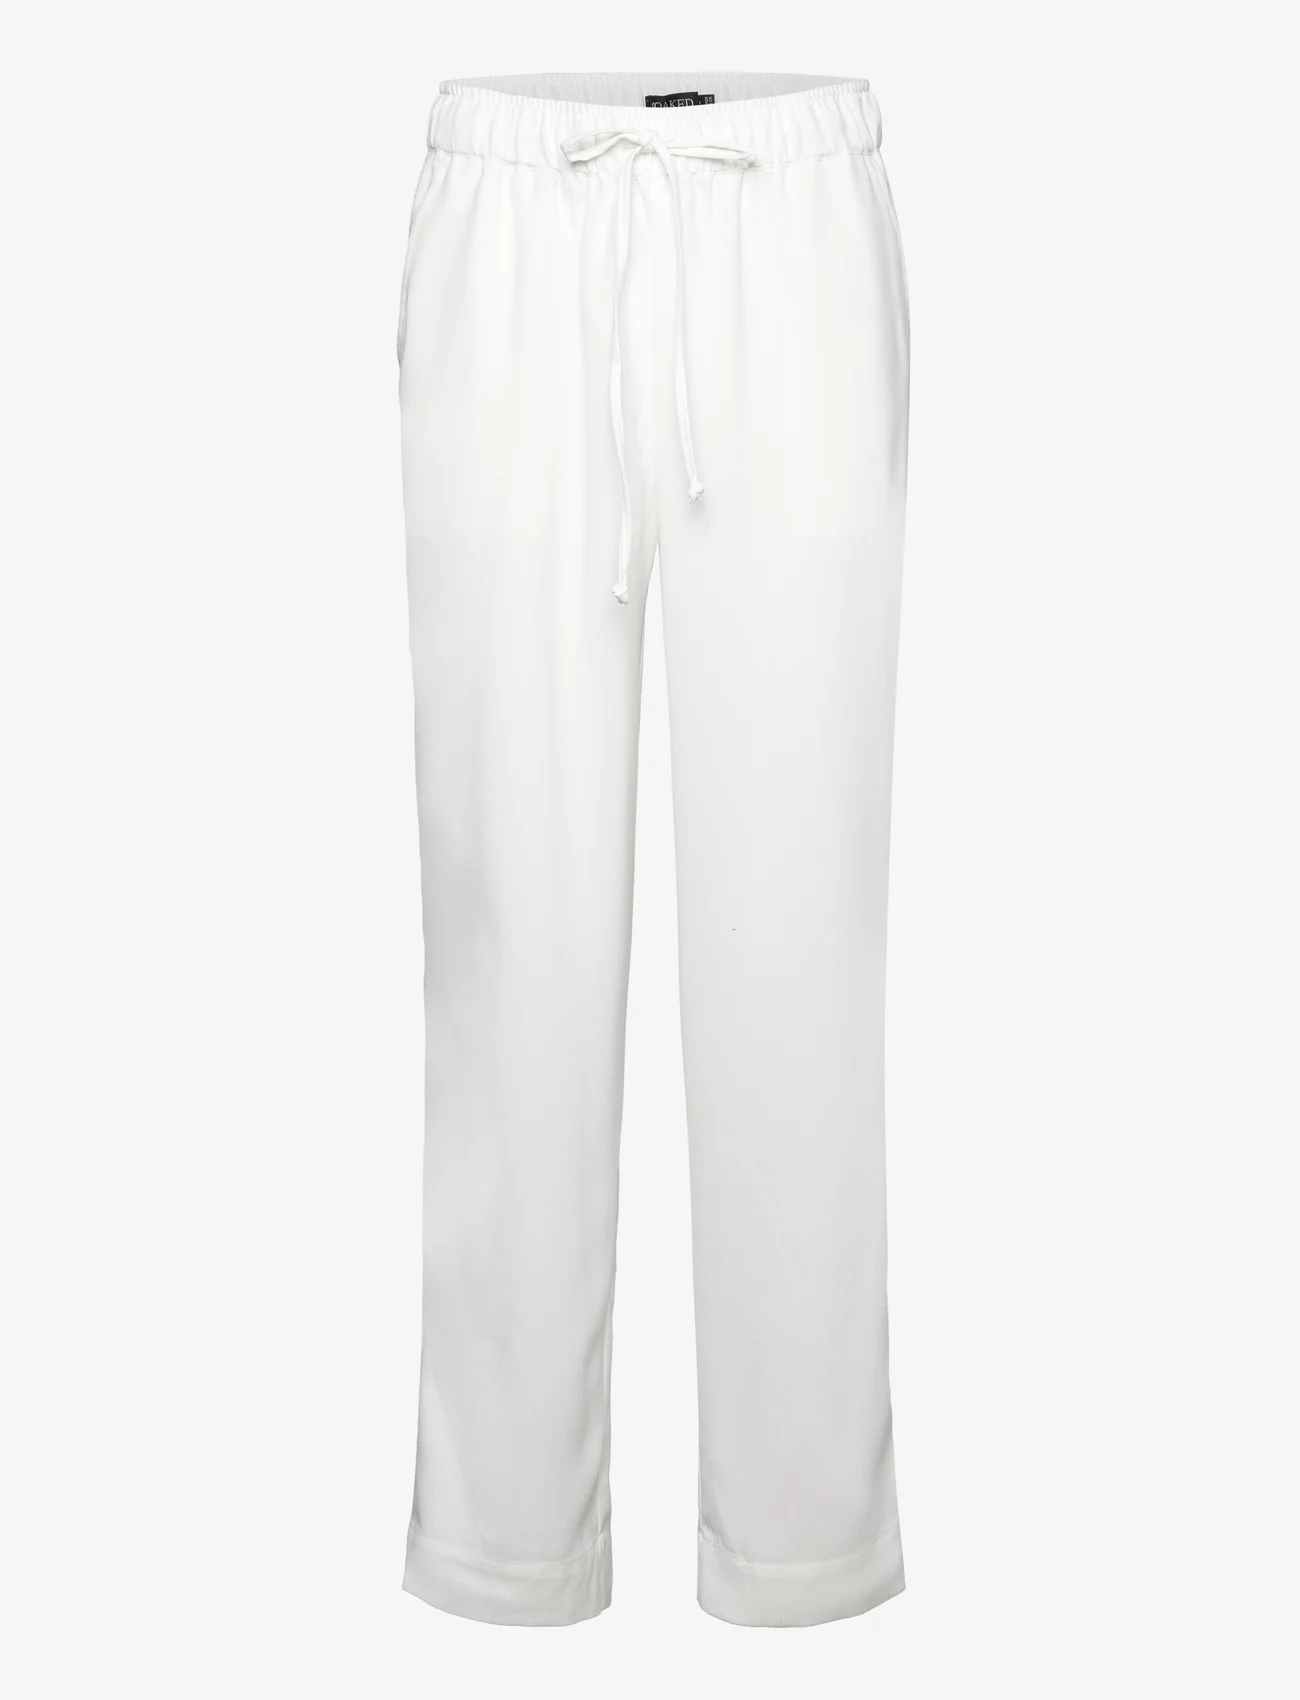 Soaked in Luxury - SLShirley Tapered Pants - bukser med lige ben - whisper white - 0